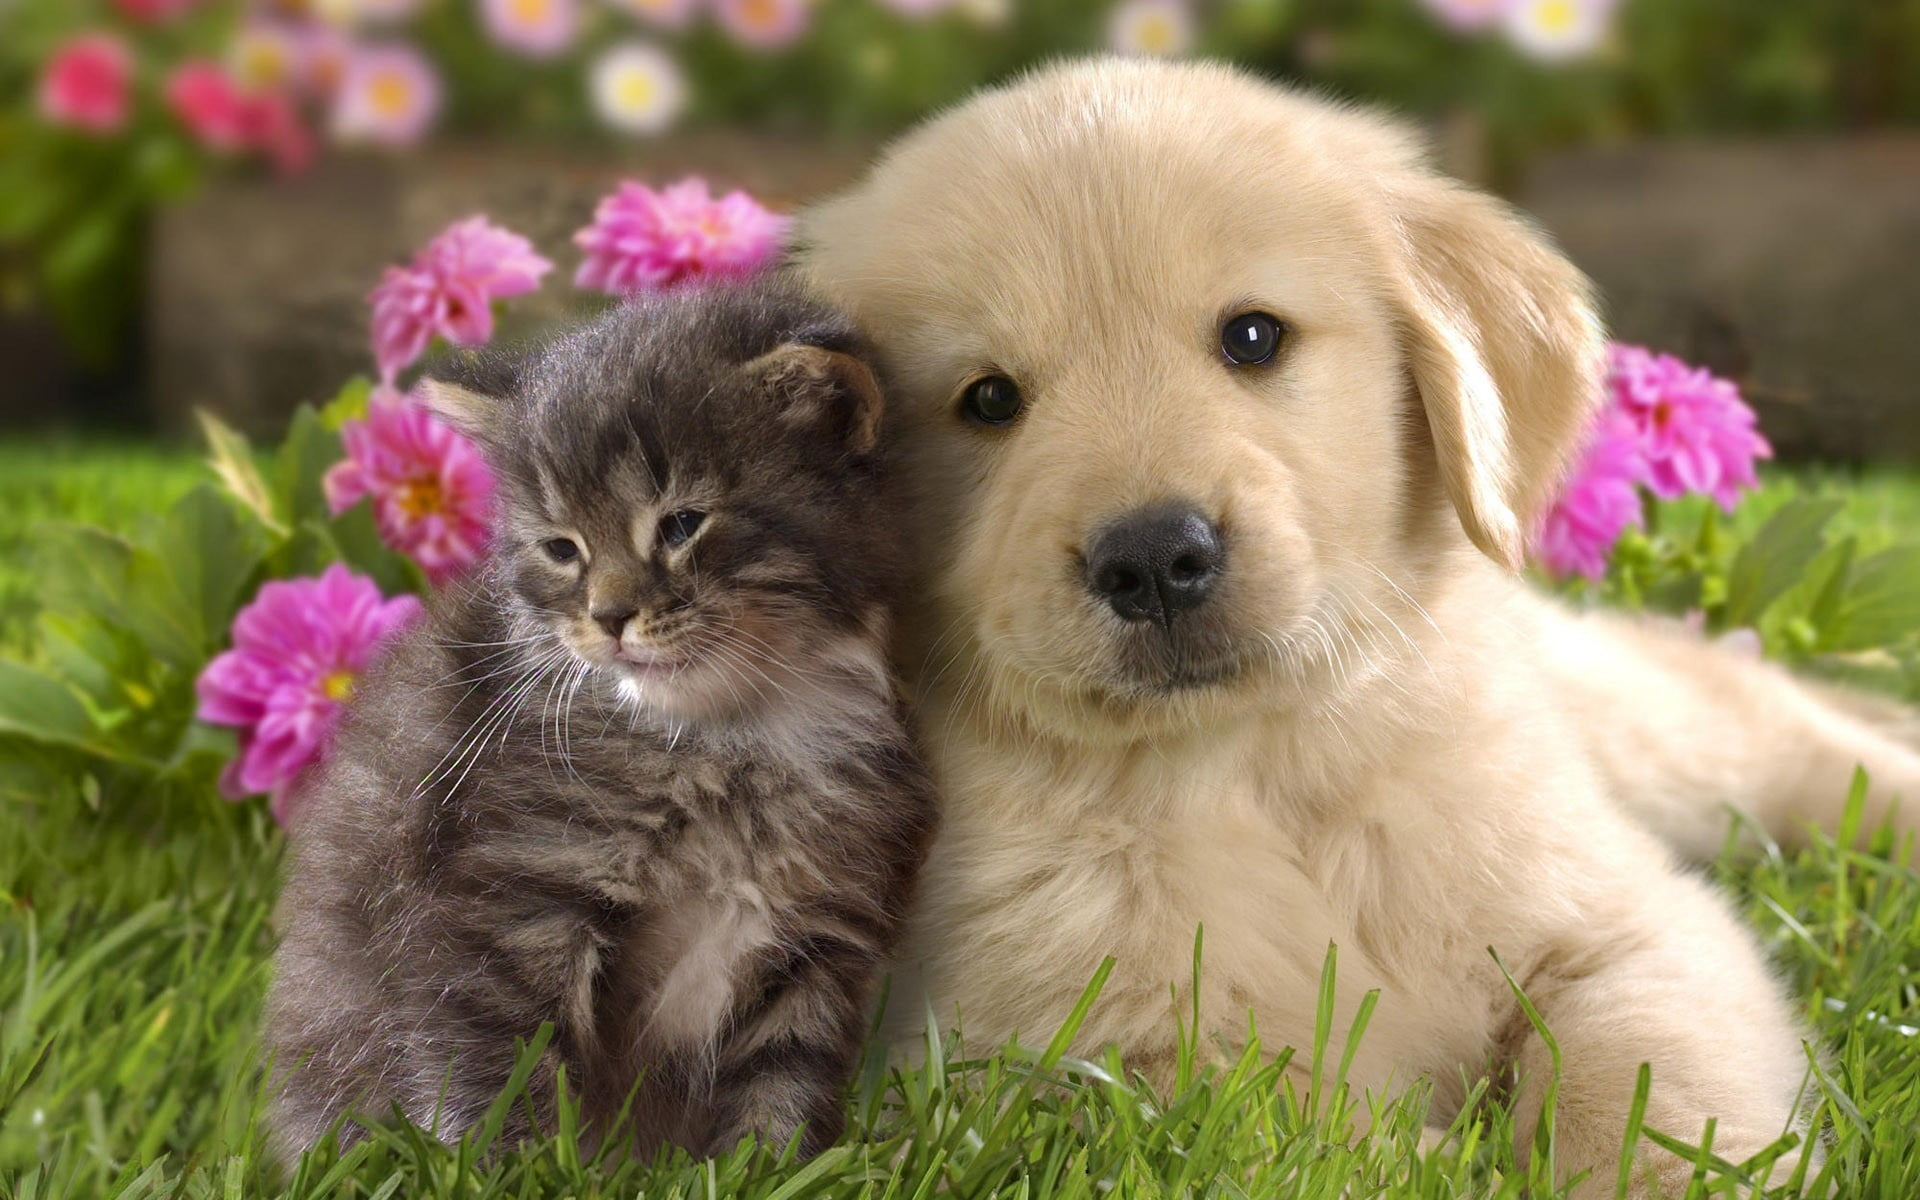 Golden retriever puppy, nature, animals, grass, puppies, kittens wallpaper • Wallpaper For You HD Wallpaper For Desktop & Mobile